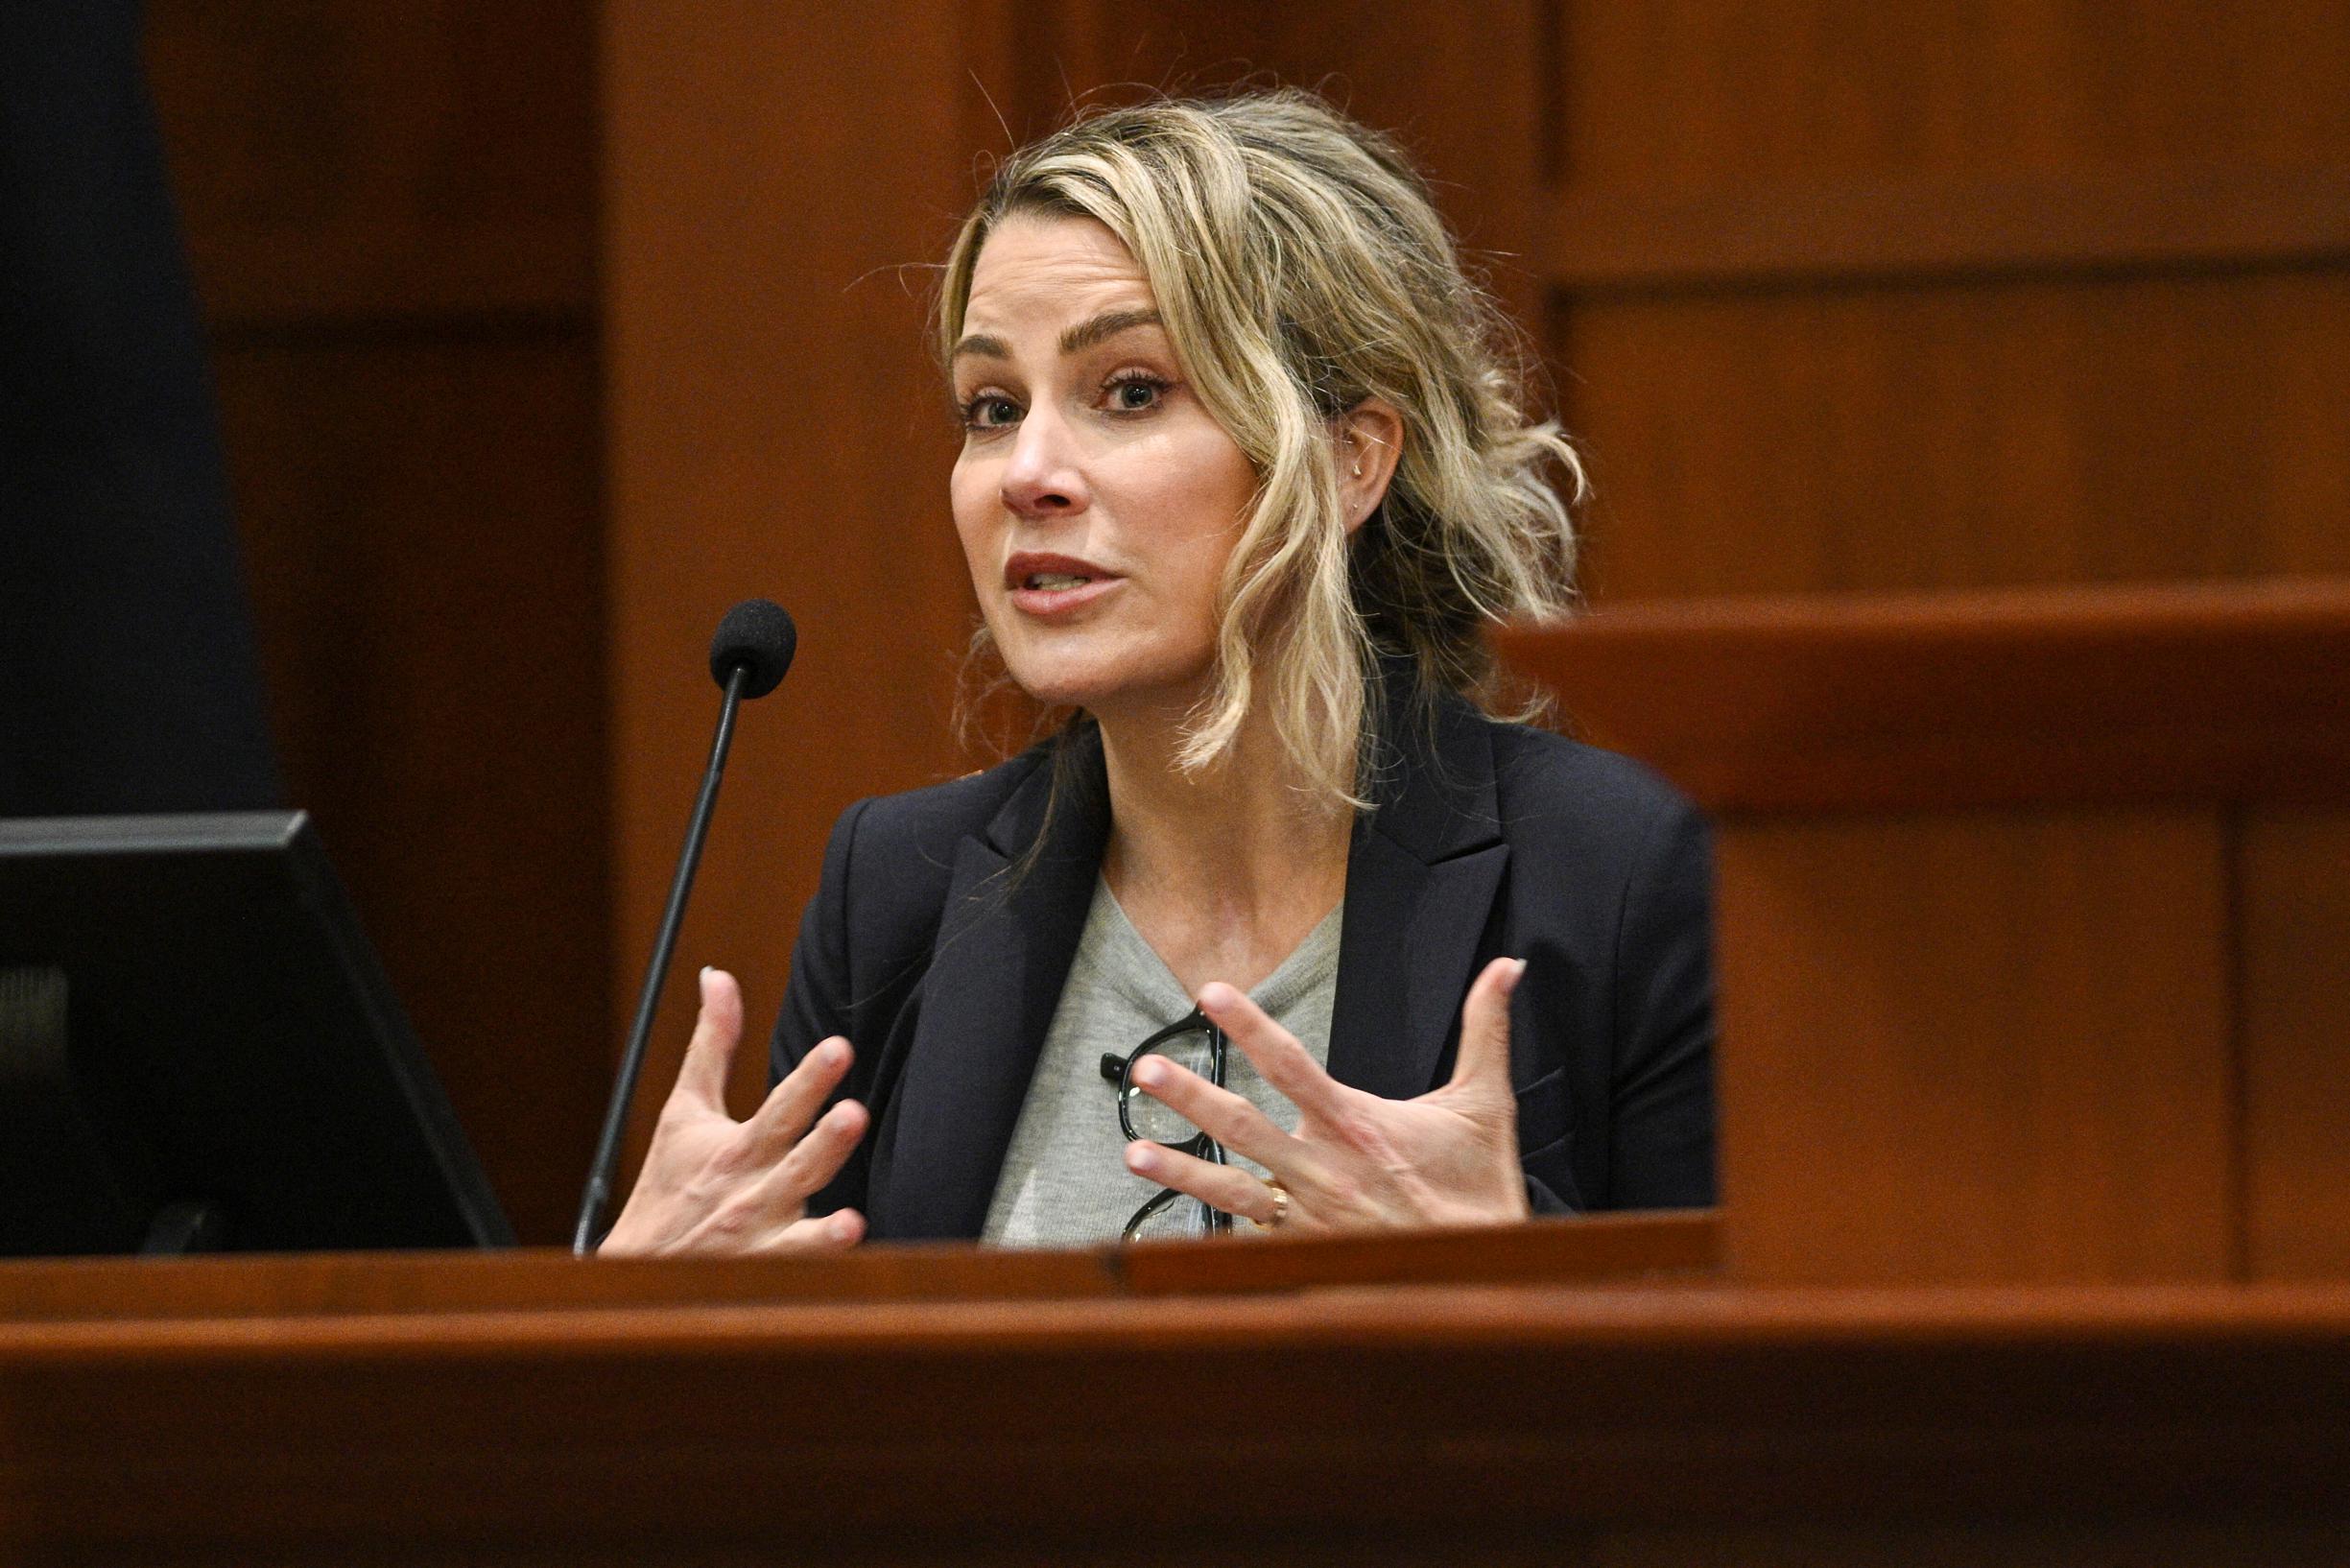 La psicologa testimonia durante il processo: “Amber Heard soffre di due disturbi della personalità”